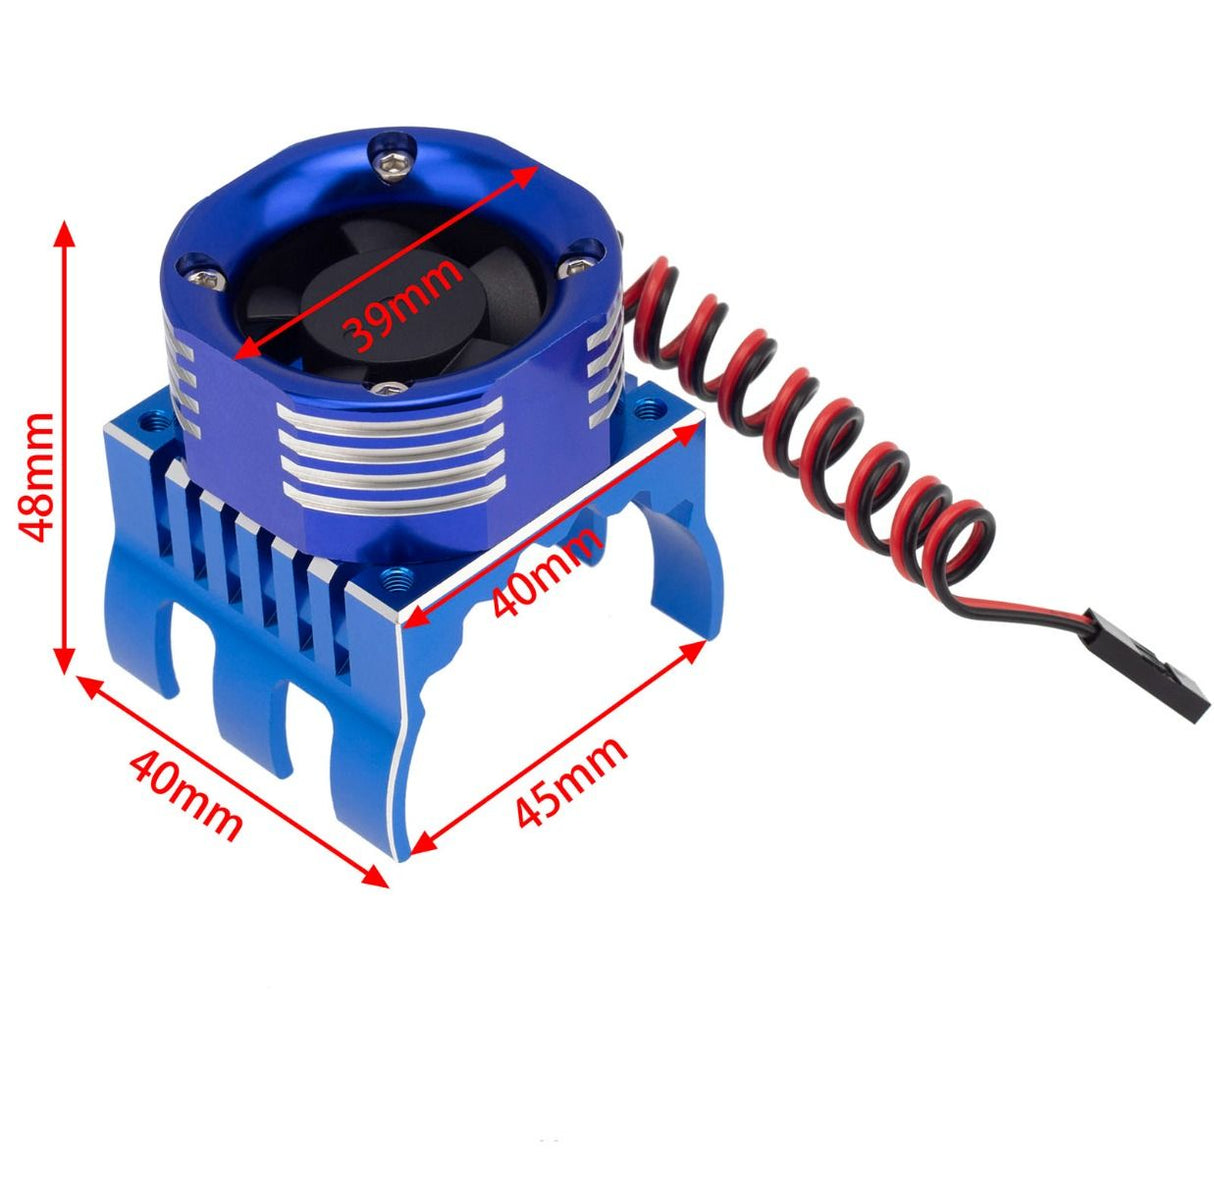 PowerHobby PHT1299-Blue 1/8 ventilateur de refroidissement à lumières LED haute vitesse en aluminium